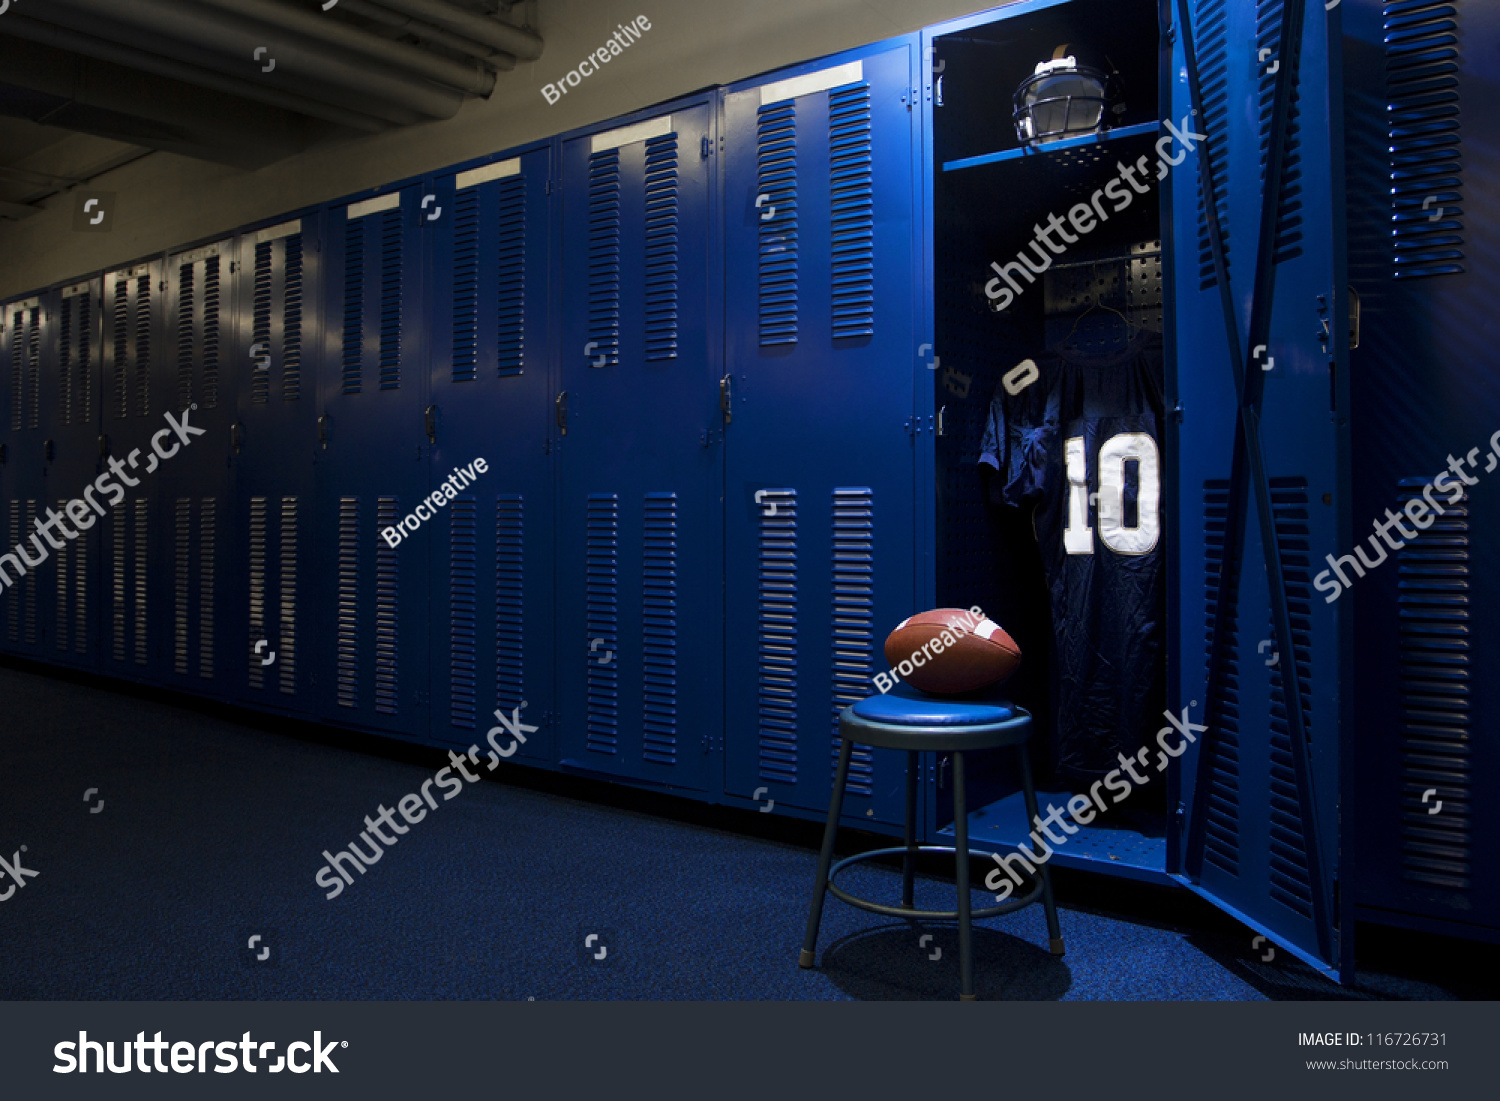 Football Locker Room Stock Photo 116726731 | Shutterstock